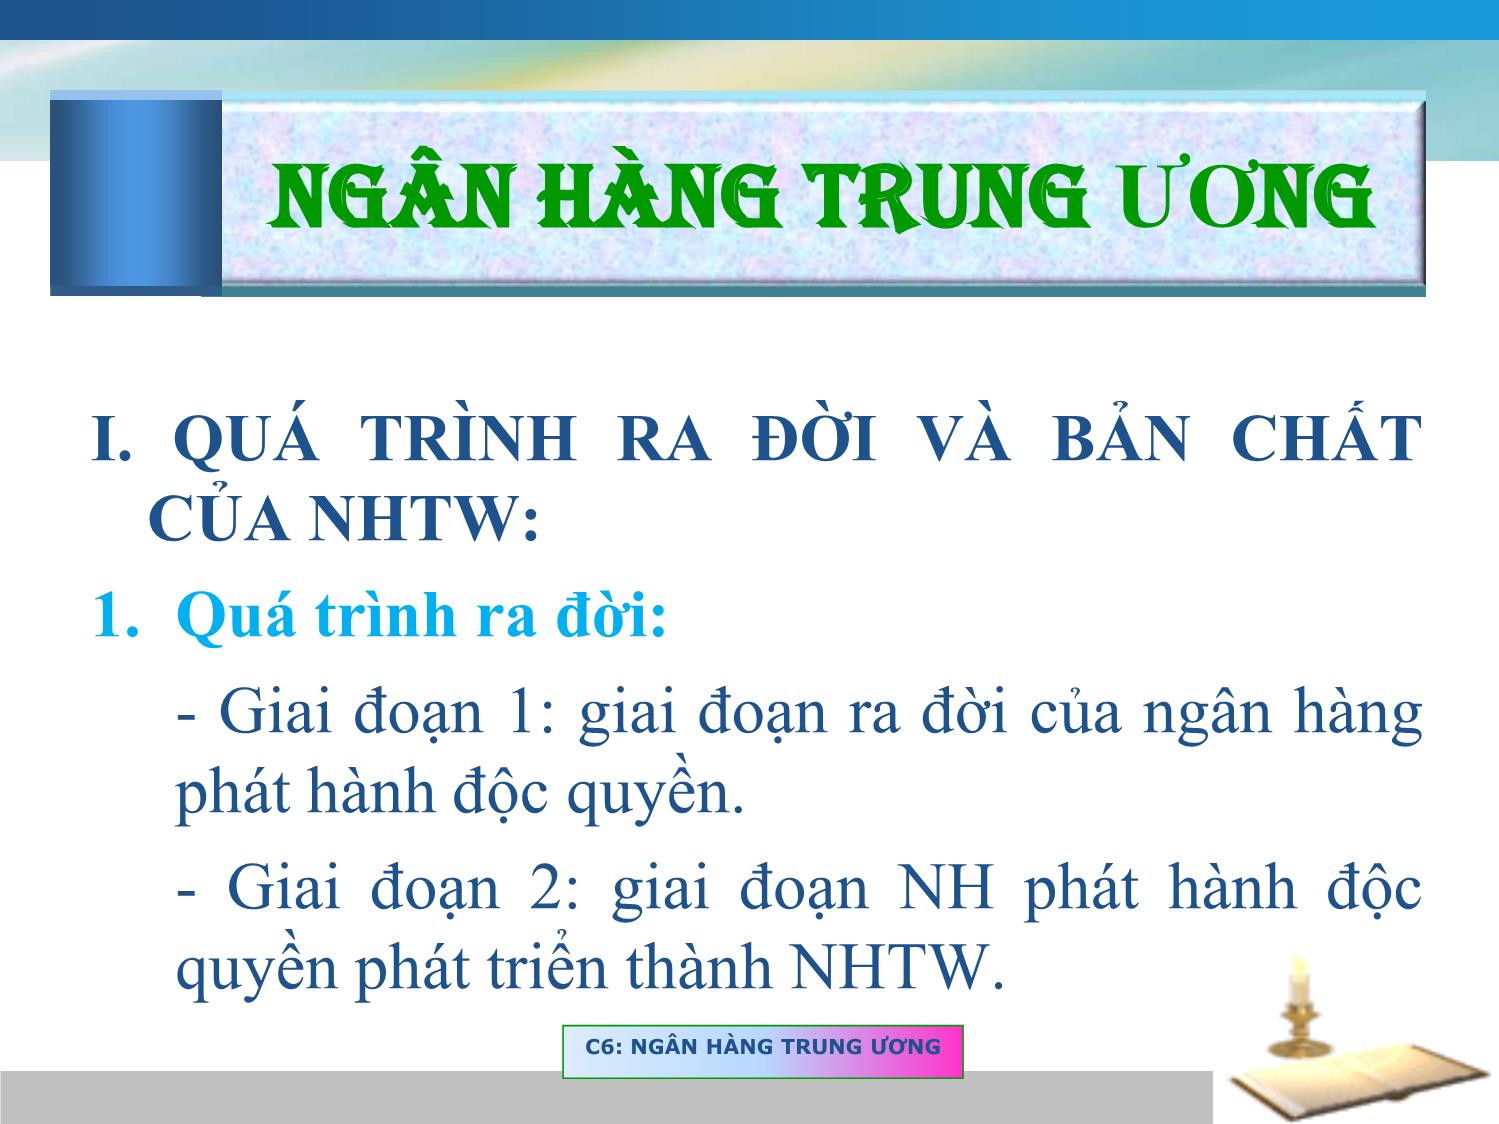 Chuong8 NganhangTrunguong  CHƯƠNG 8 NGÂN HÀNG TRUNG ƯƠNG VÀ CHÍNH  SÁCH TIỀN TỆ Ngô Thanh Xuân  Studocu